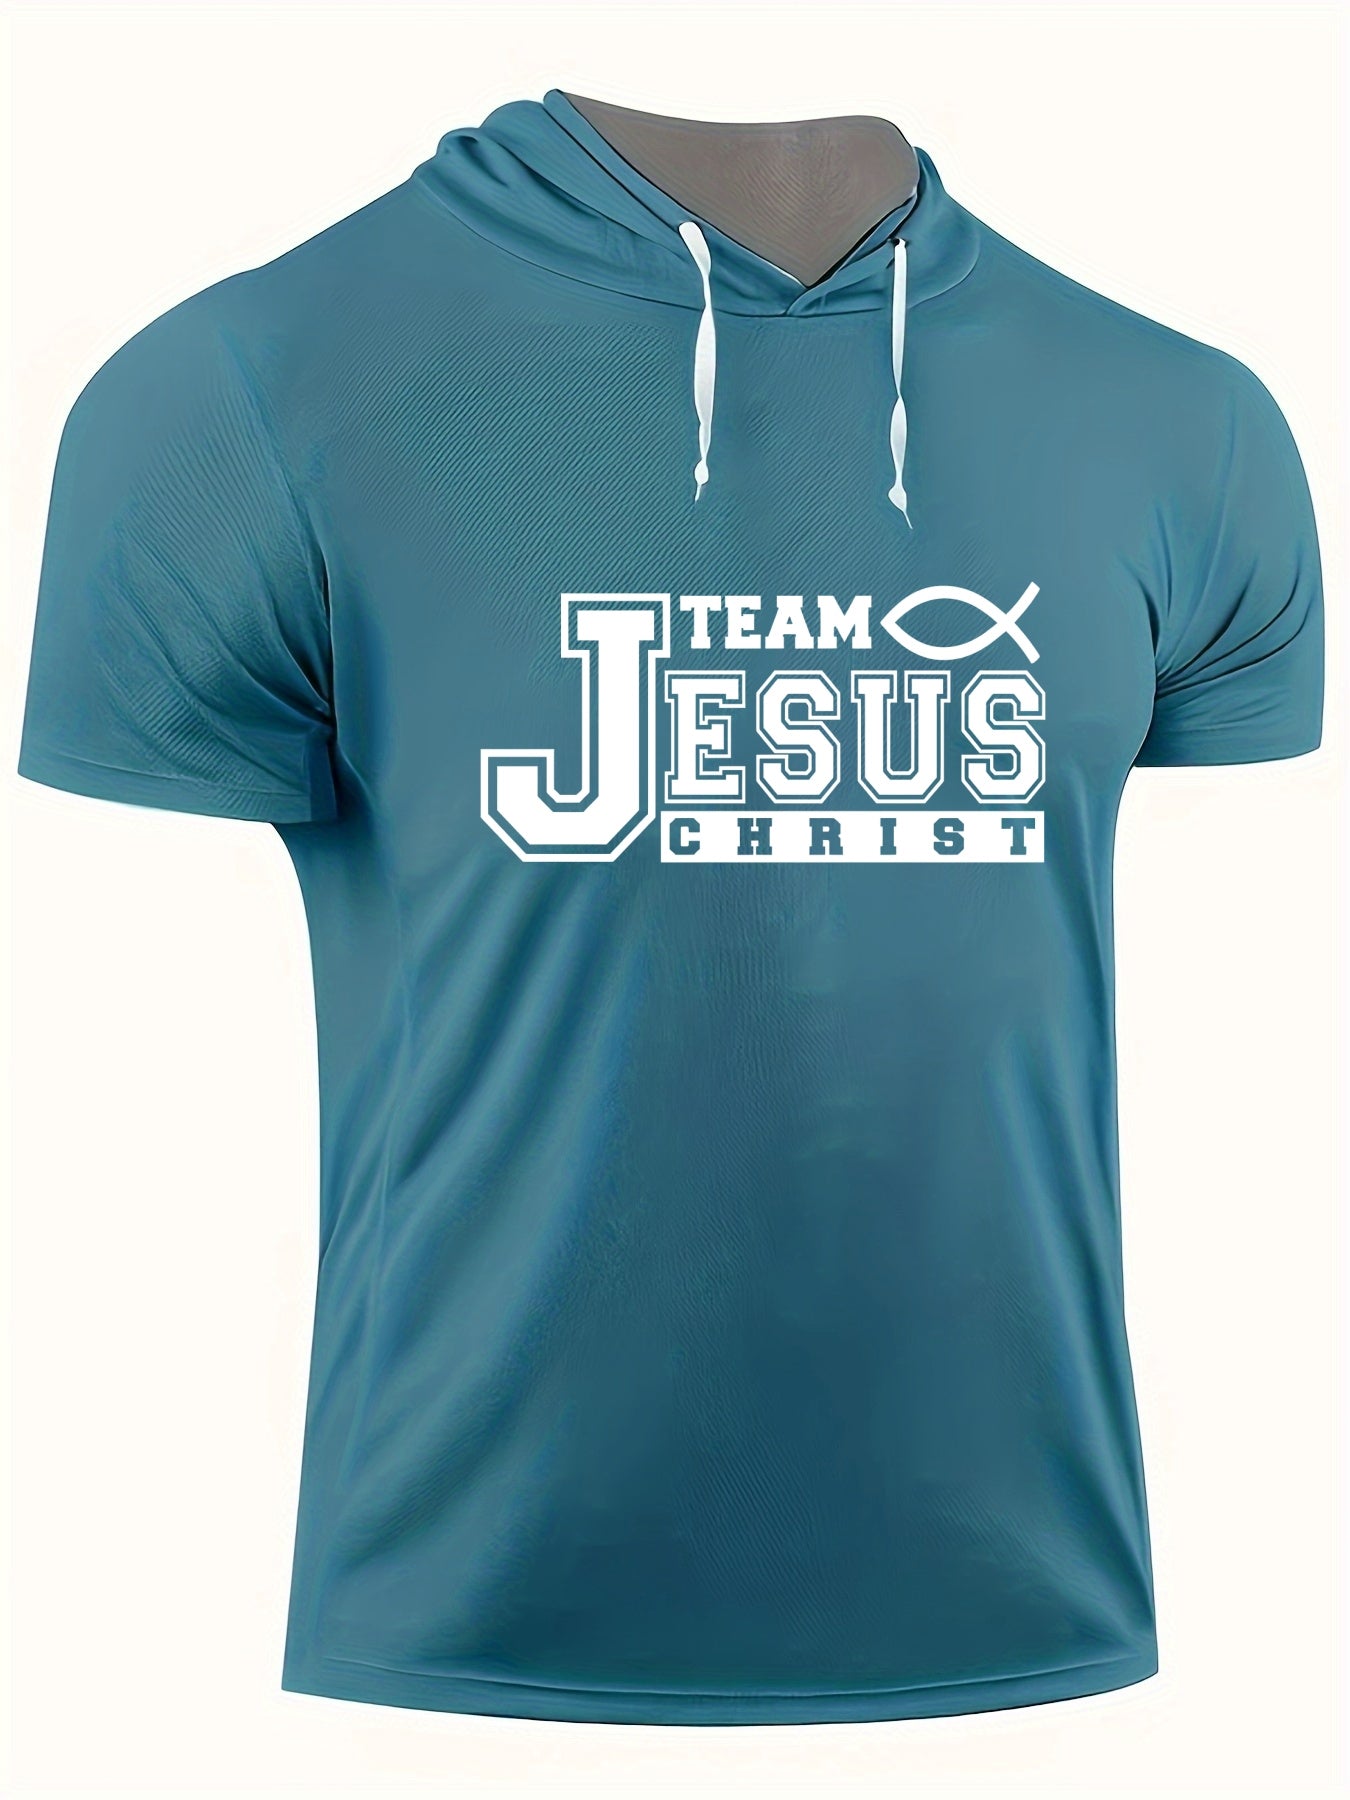 Team Jesus Christ Plus Size Men's Christian Hooded T-shirt claimedbygoddesigns